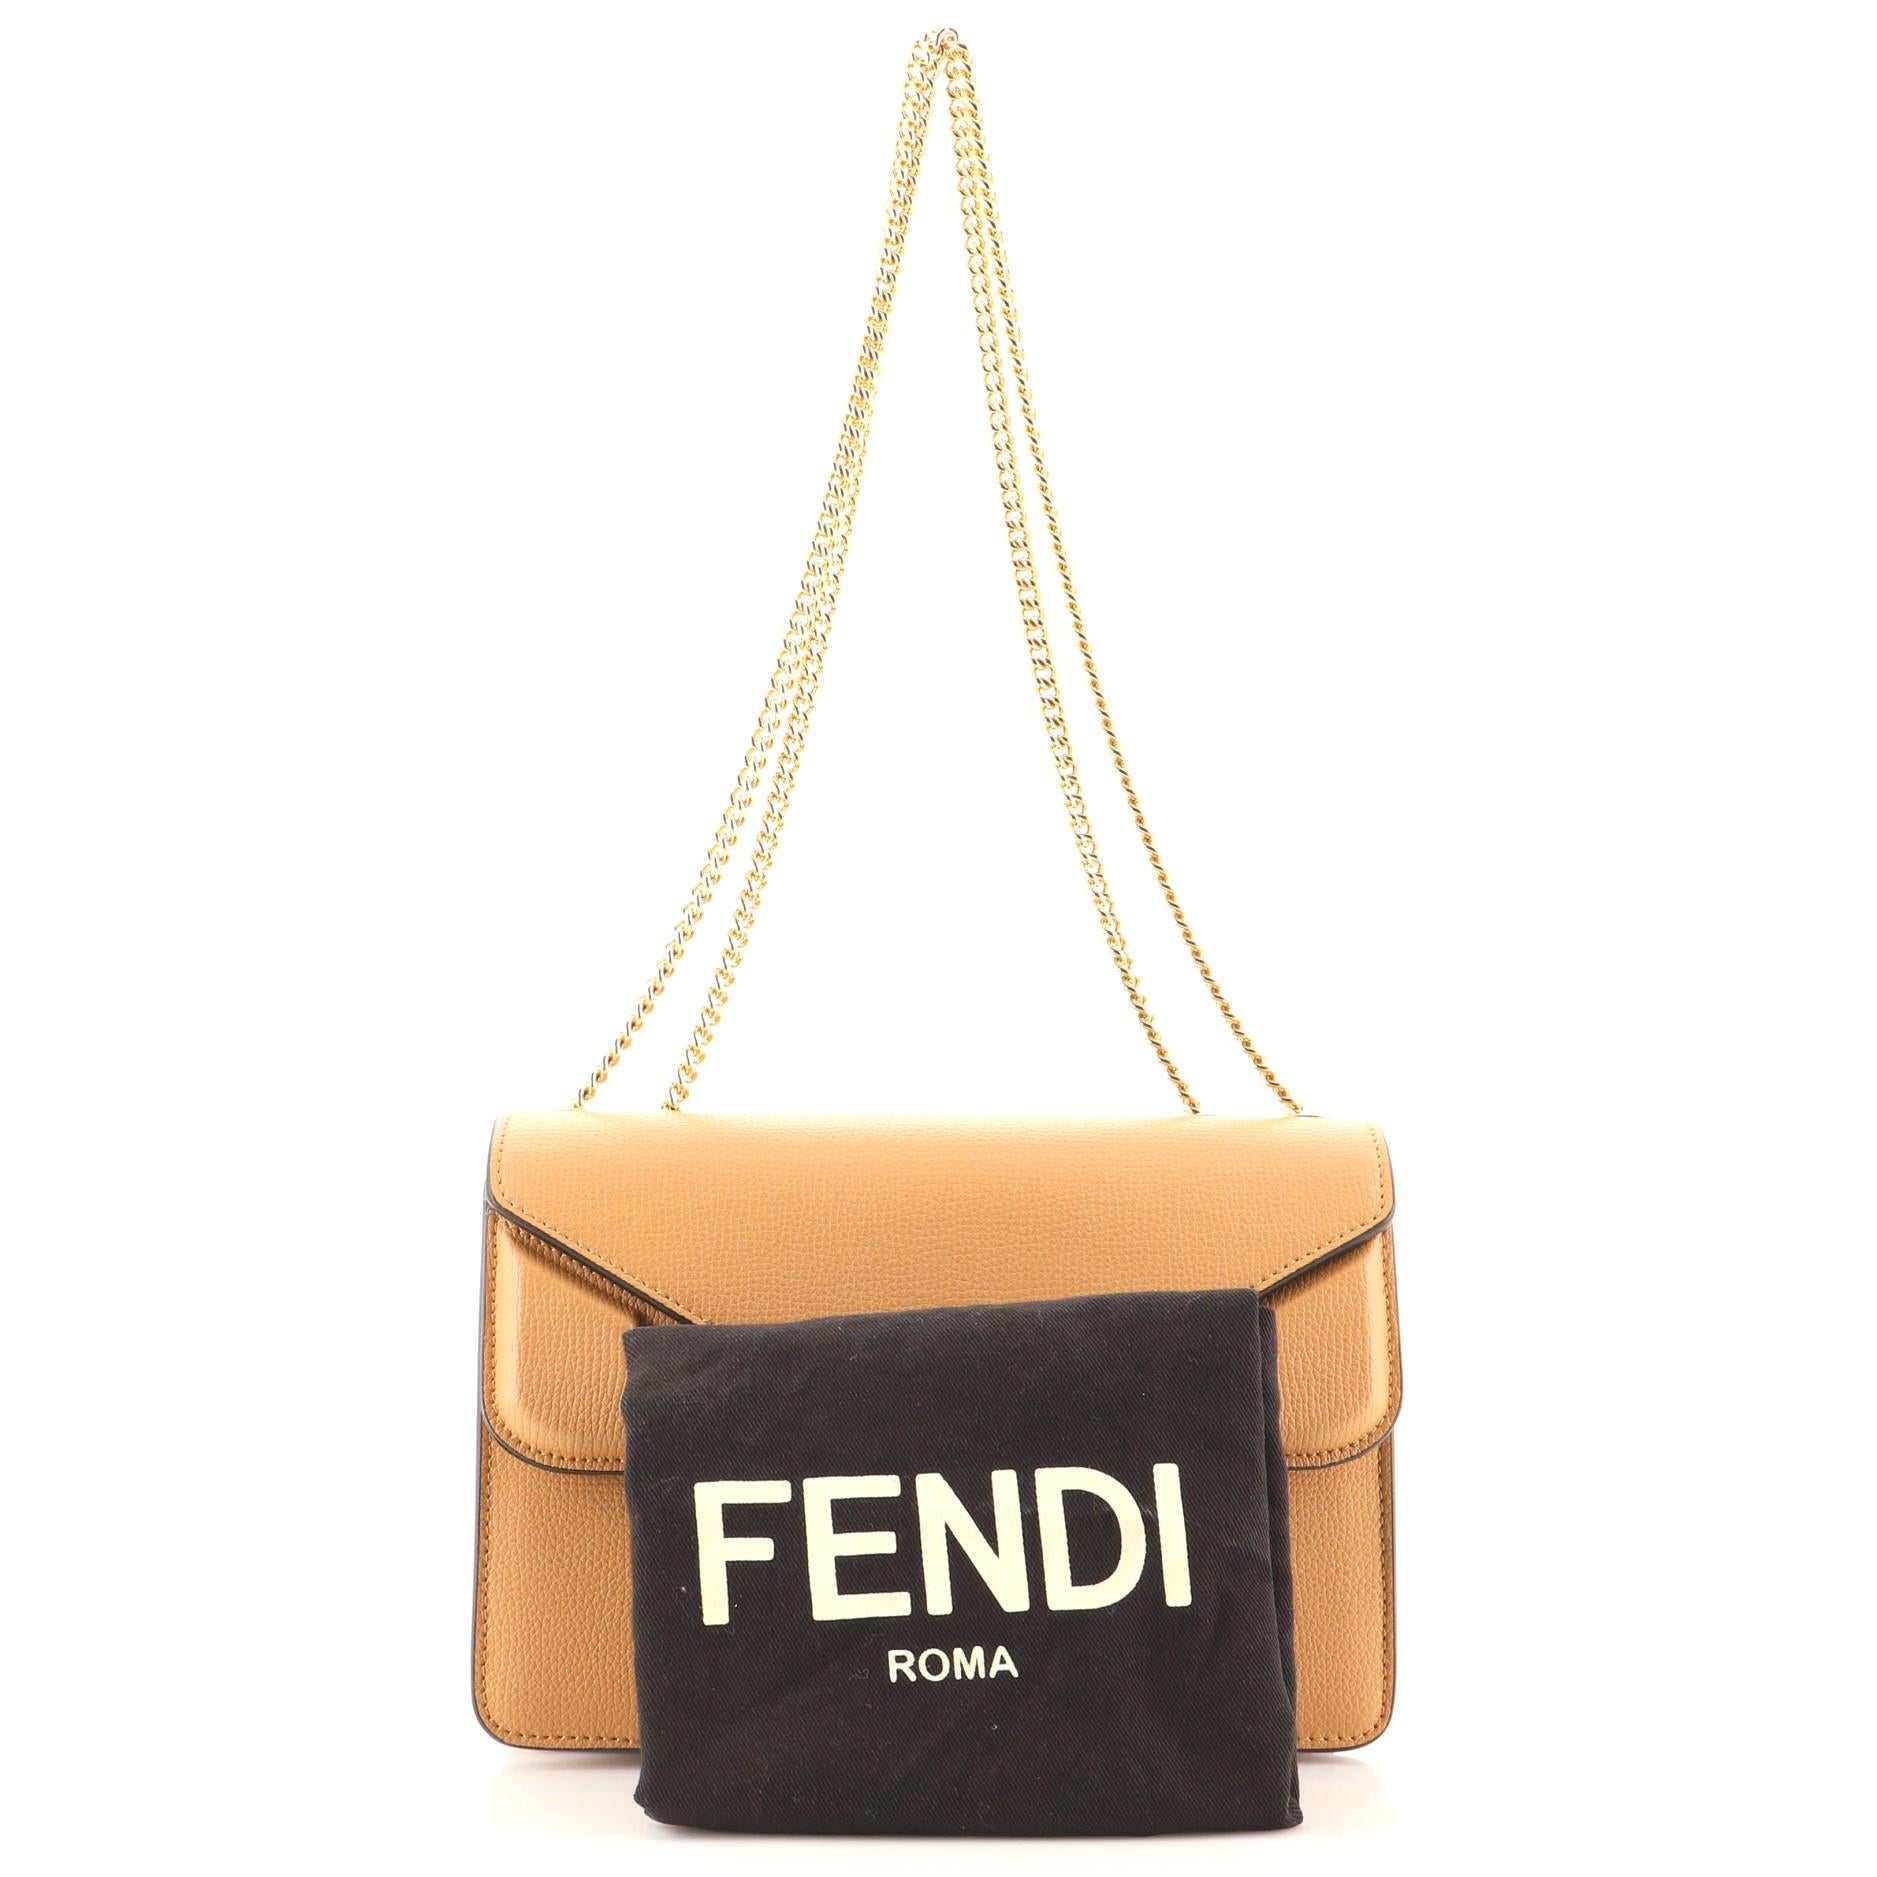 Fendi Bag Bug - 8 For Sale on 1stDibs | fendi bag bugs, bag bugs 